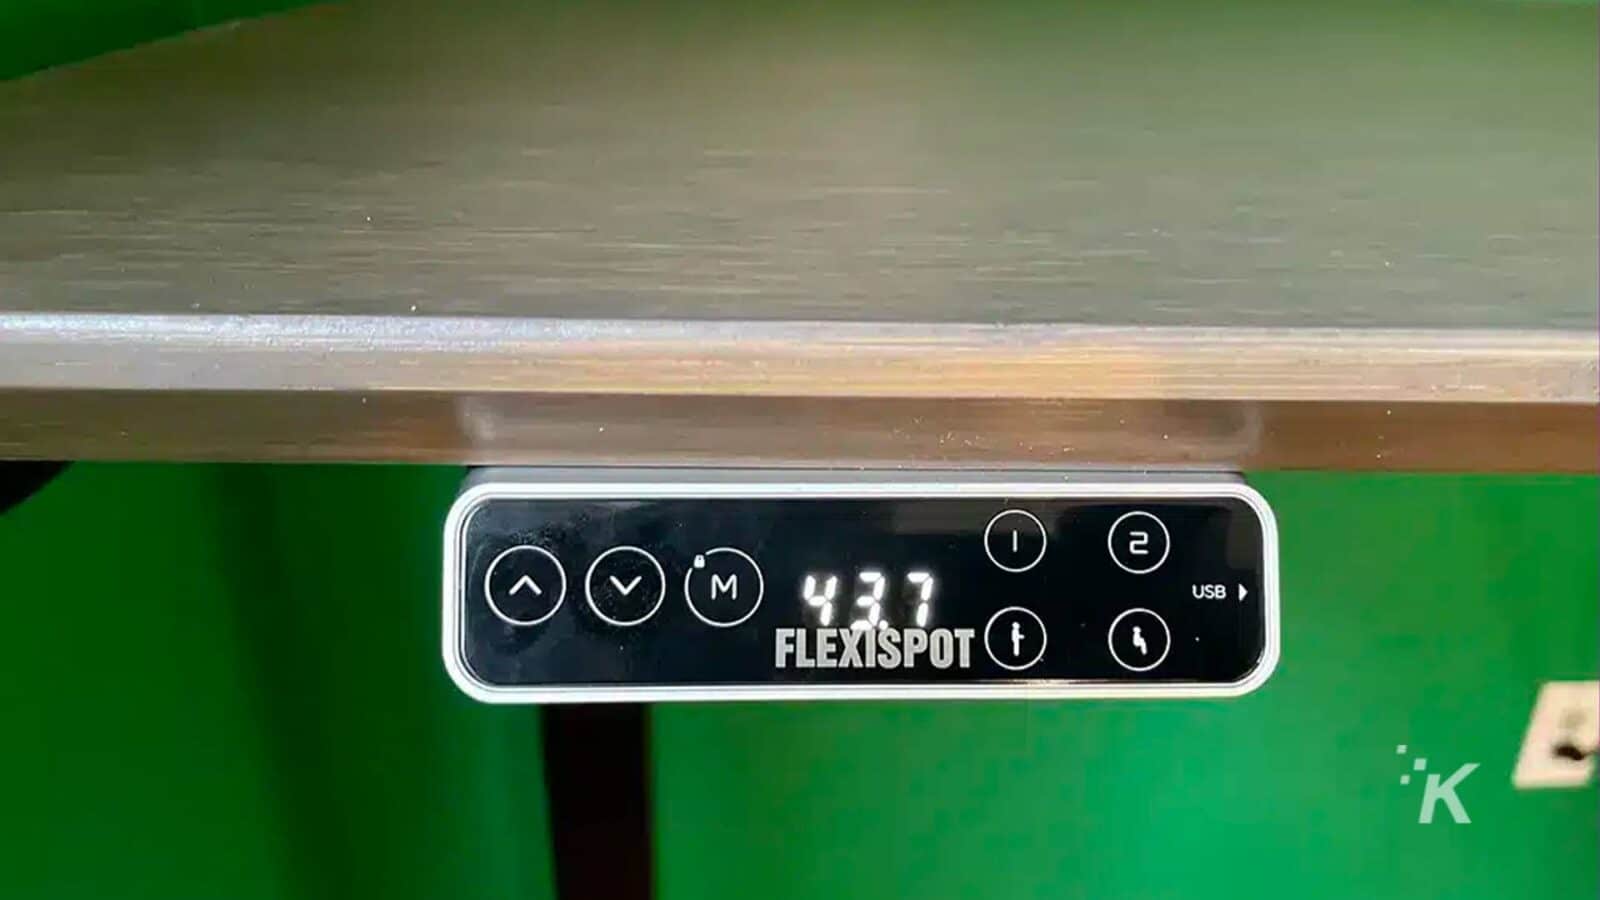 該圖像顯示 USB 電纜連接到 FlexiSpot 設備。全文： - VM) 437 2 1 USB od FLEXISPOT K